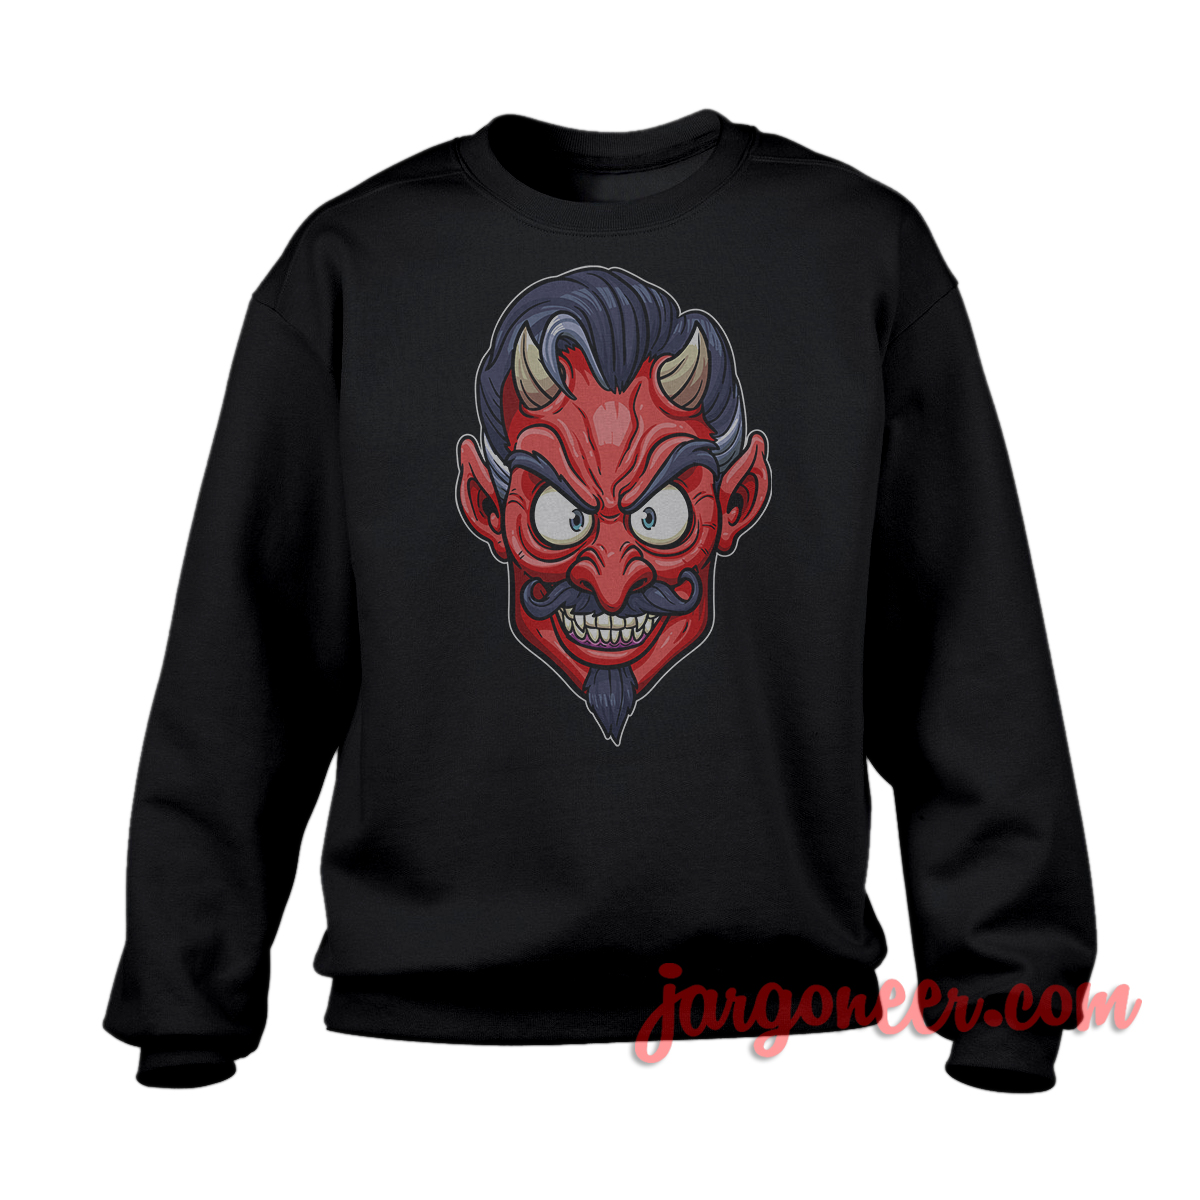 The Face Of Devil Black SS - Shop Unique Graphic Cool Shirt Designs